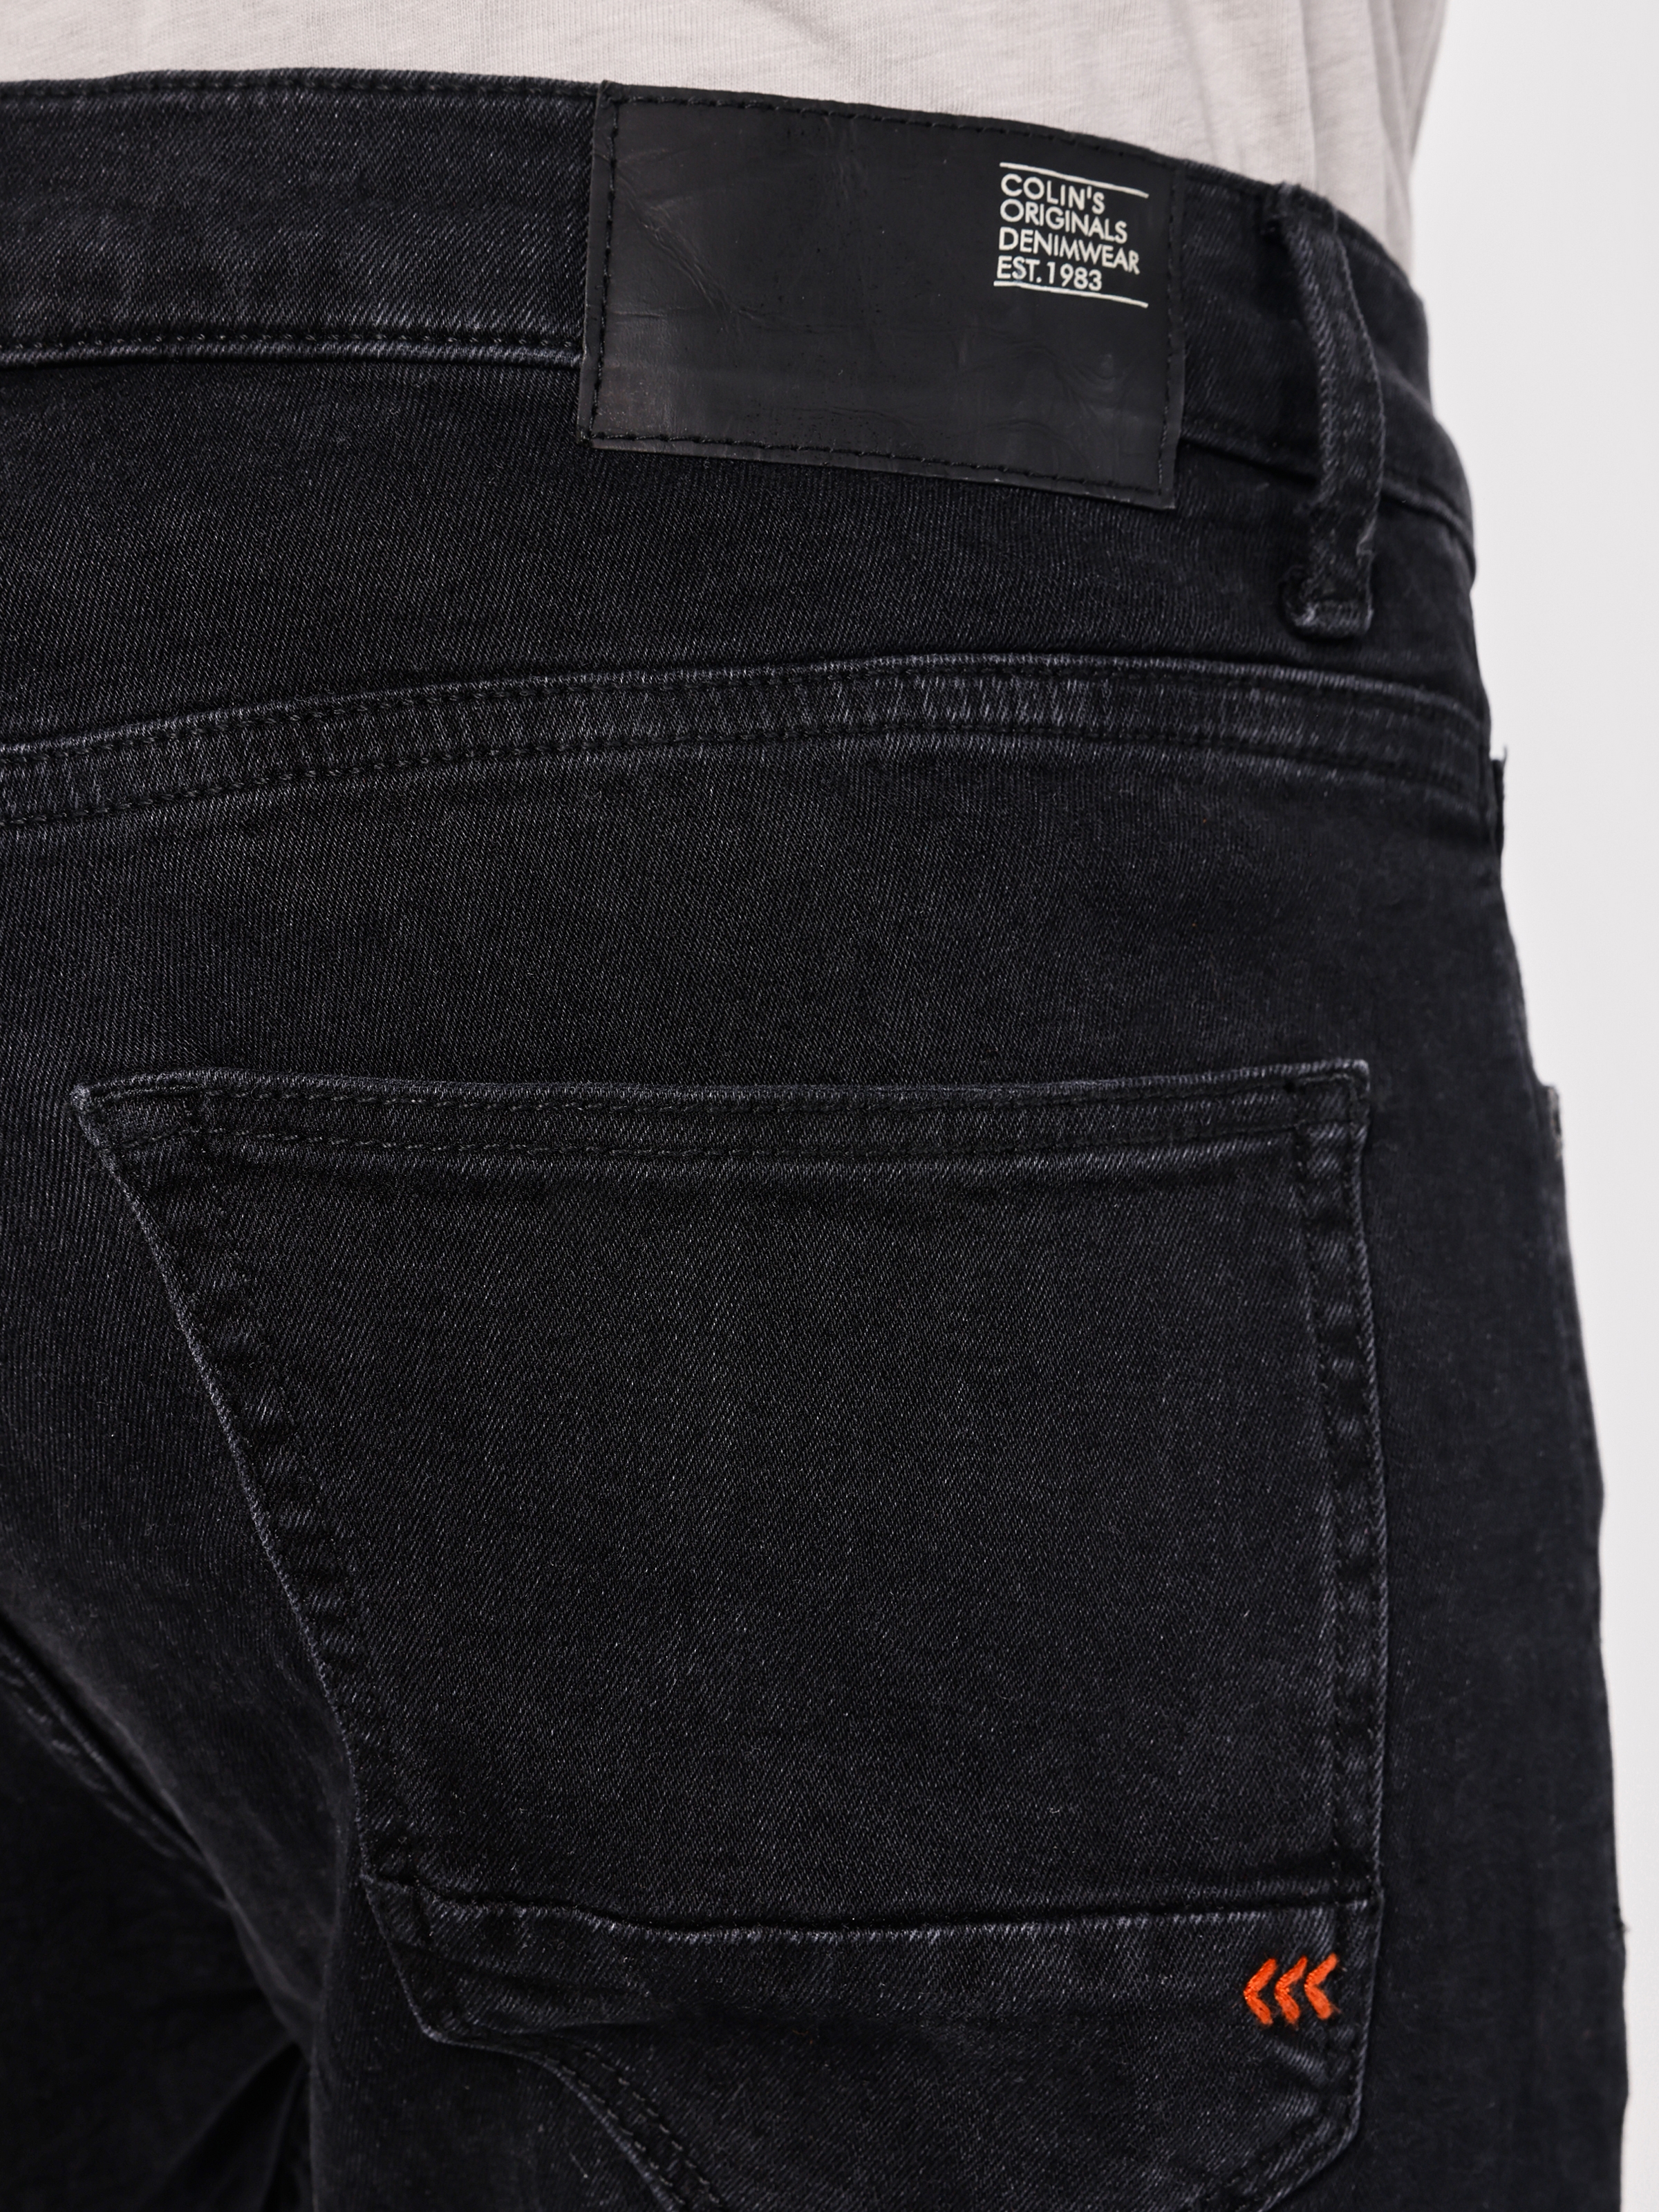 Afficher les détails de 040 Alex Super Slim Fit Taille Basse Jambe Étroite Pantalon En Jean Noir Pour Hommes